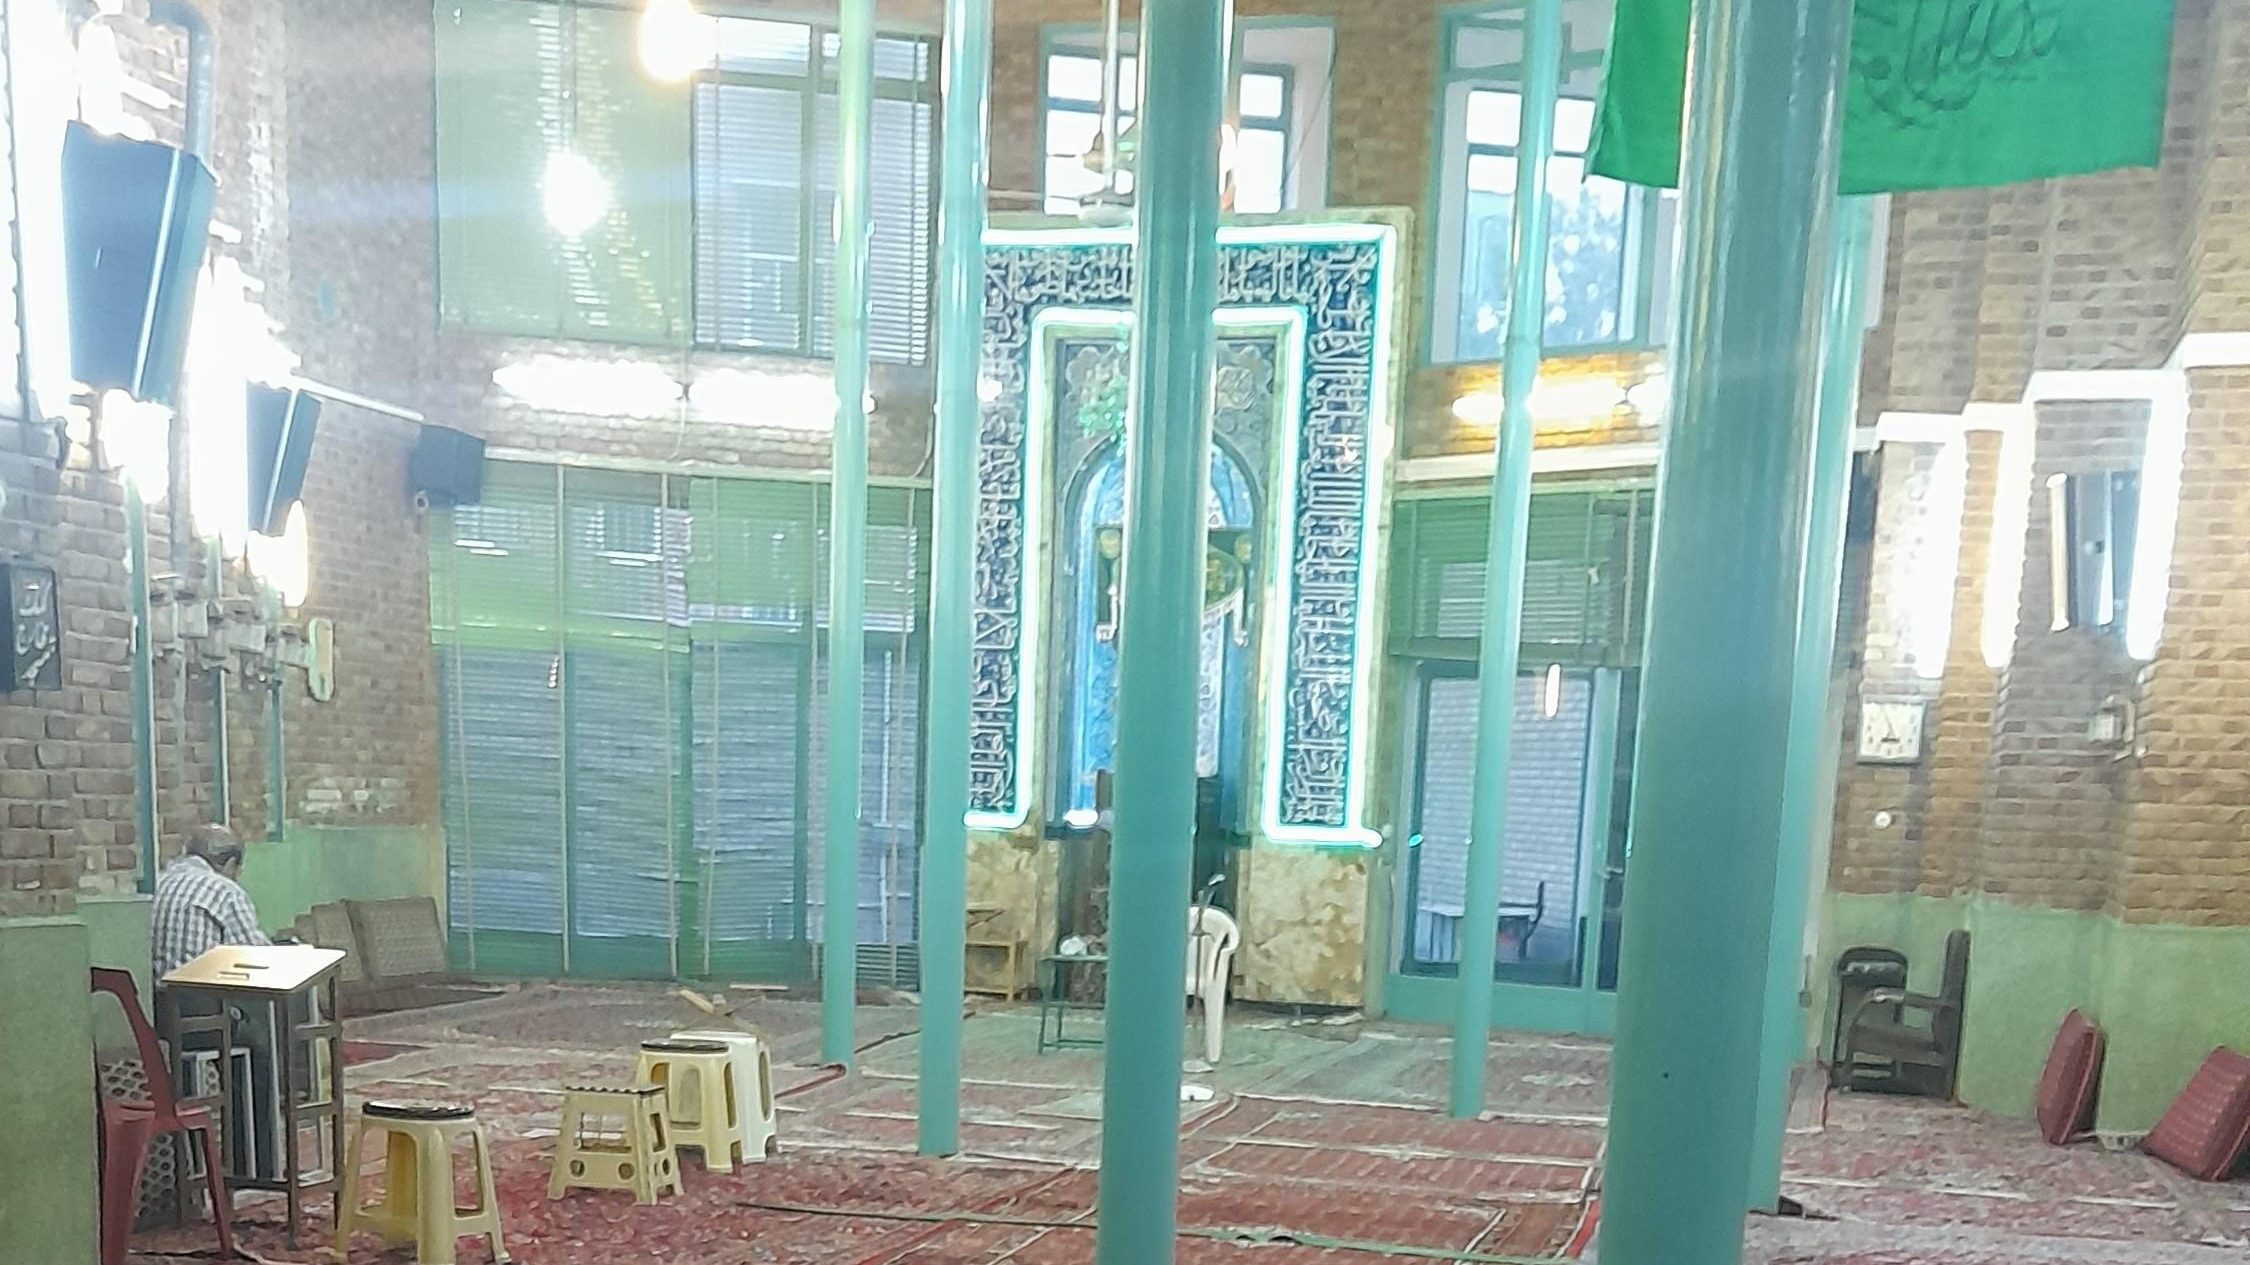 مسجد الحسین علیه السلام